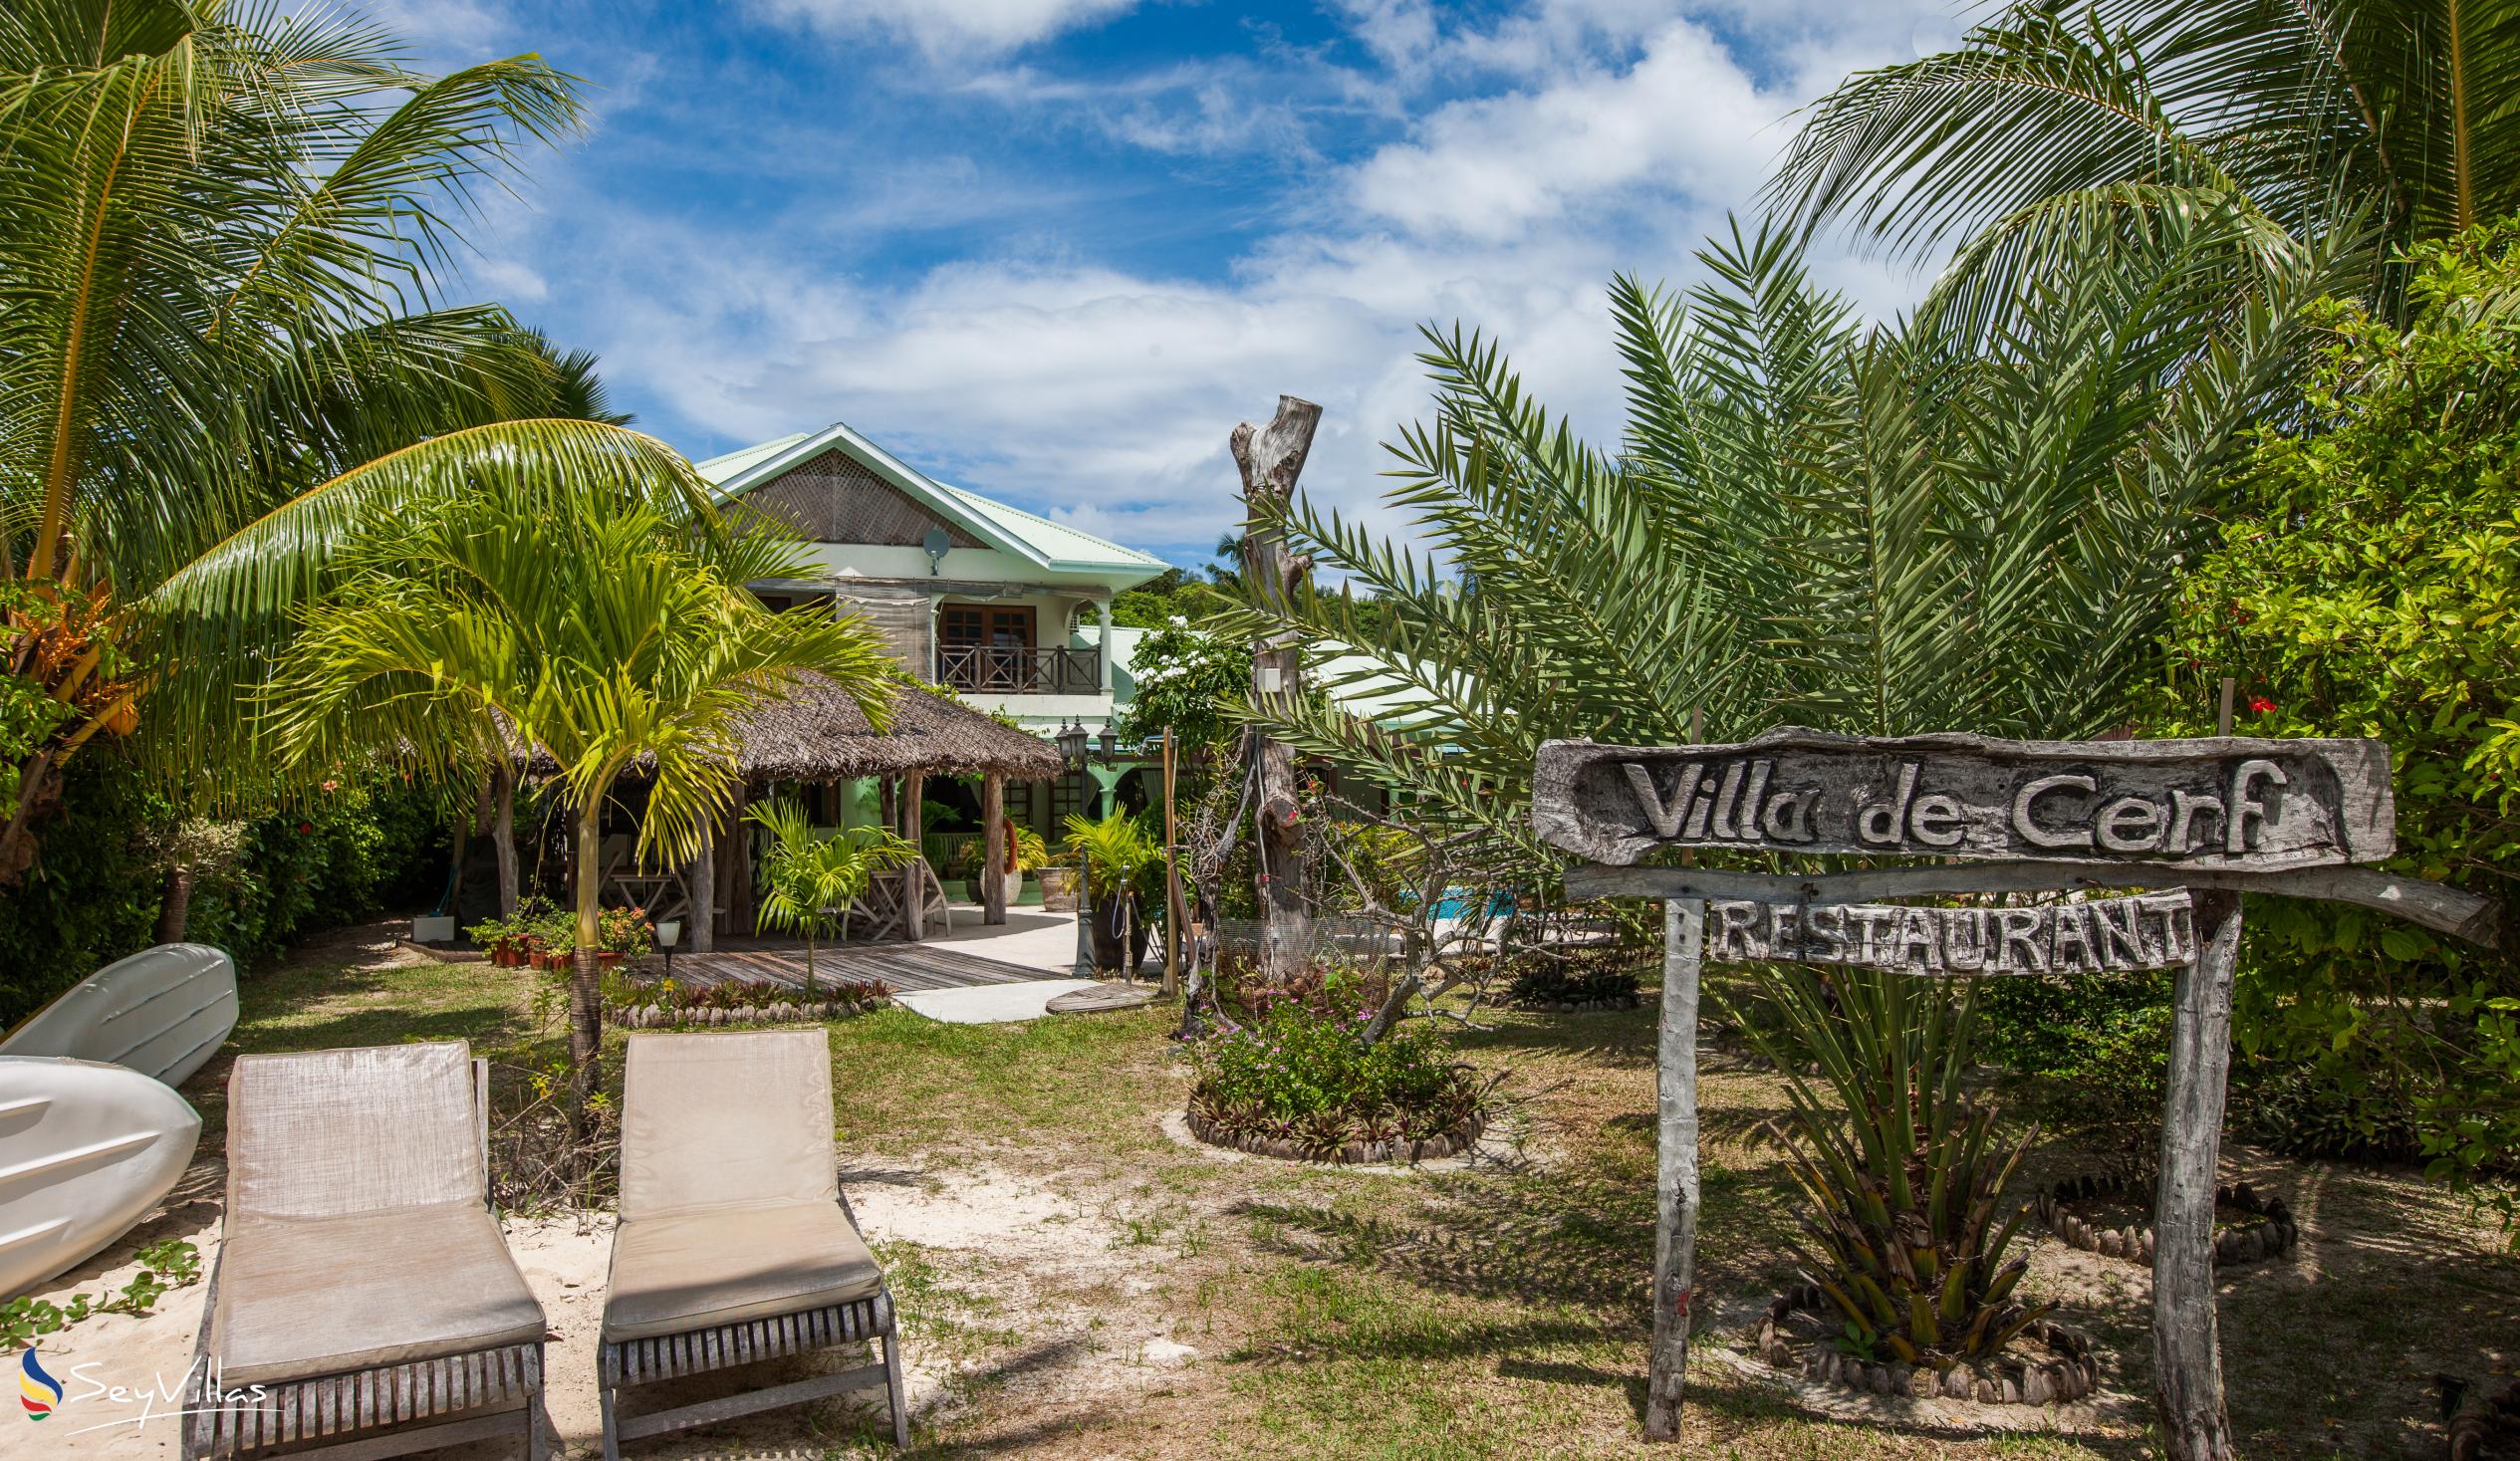 Foto 13: Villa de Cerf - Esterno - Cerf Island (Seychelles)